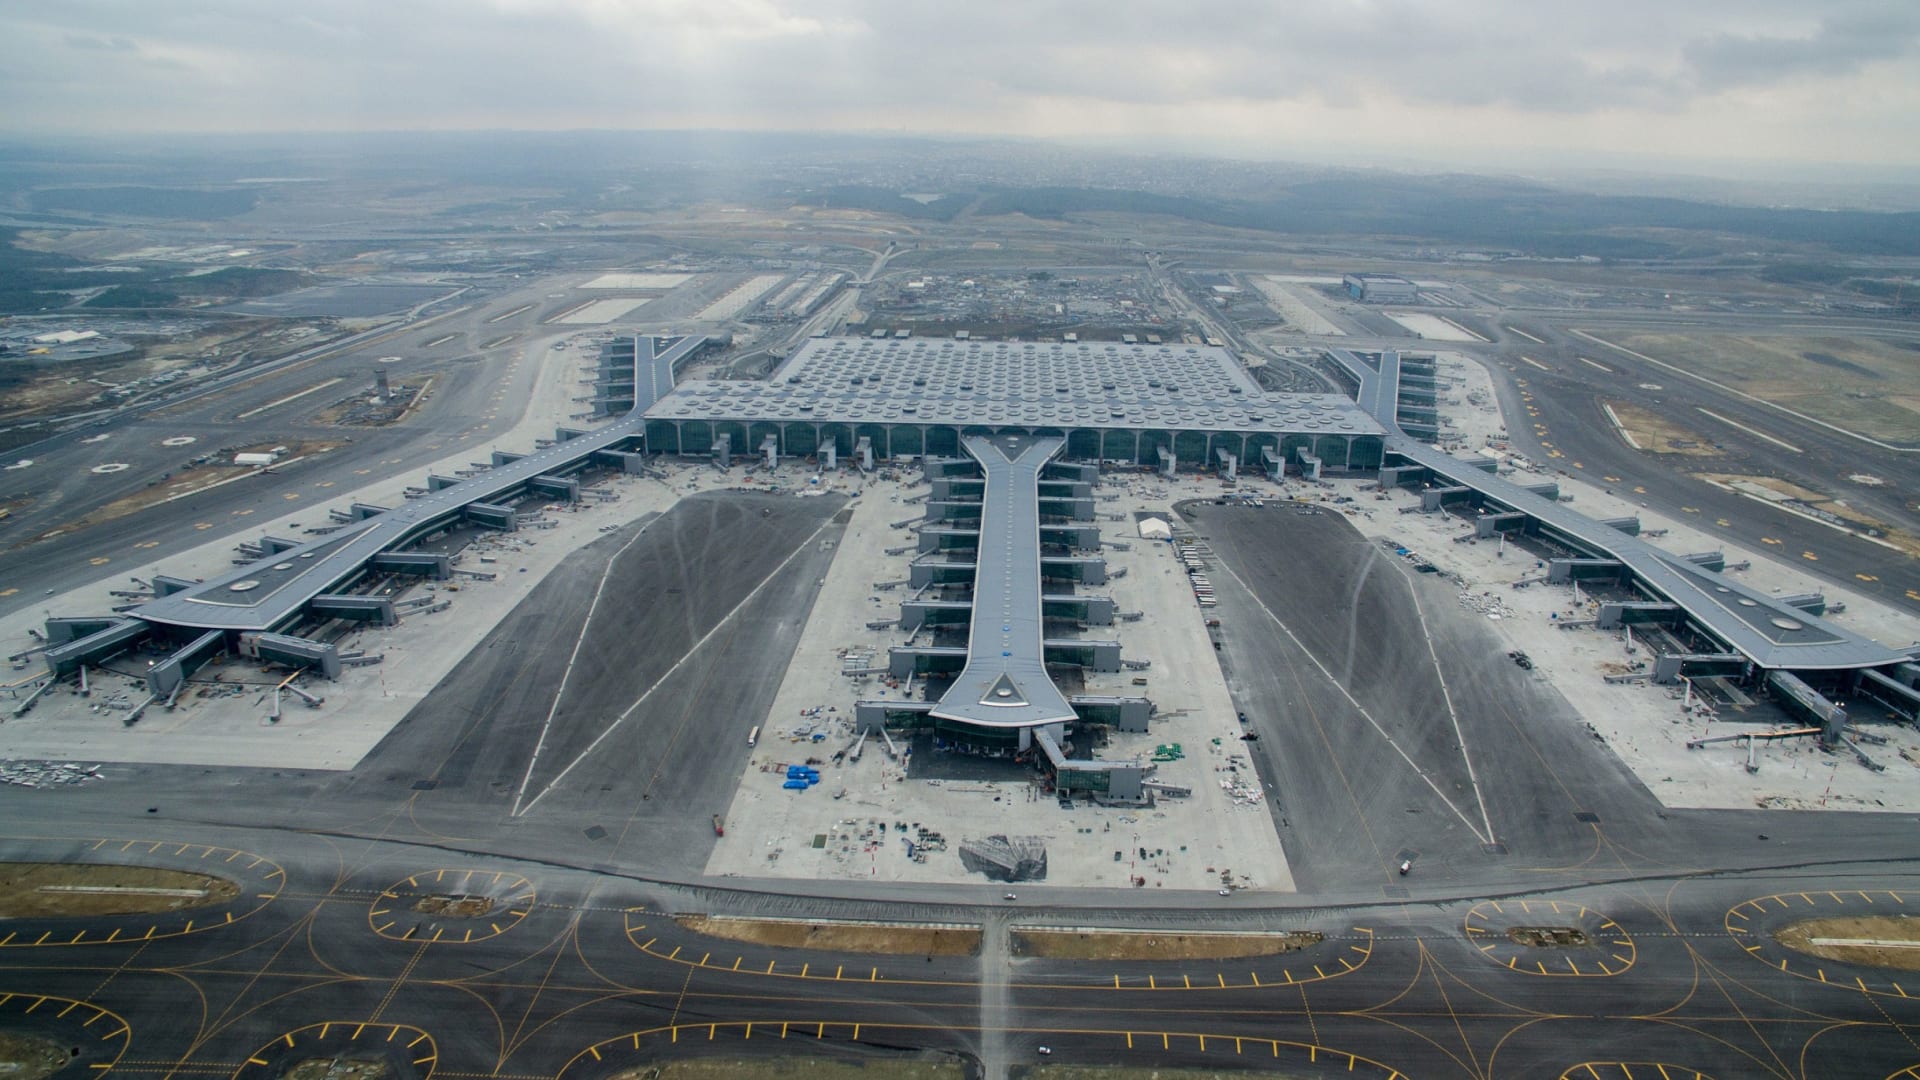 فاز تصميم مطار اسطنبول الجديد بالجائزة الأولى في فئة "مشاريع المستقبل - البنية التحتية"، في مهرجان العمارة العالمي.